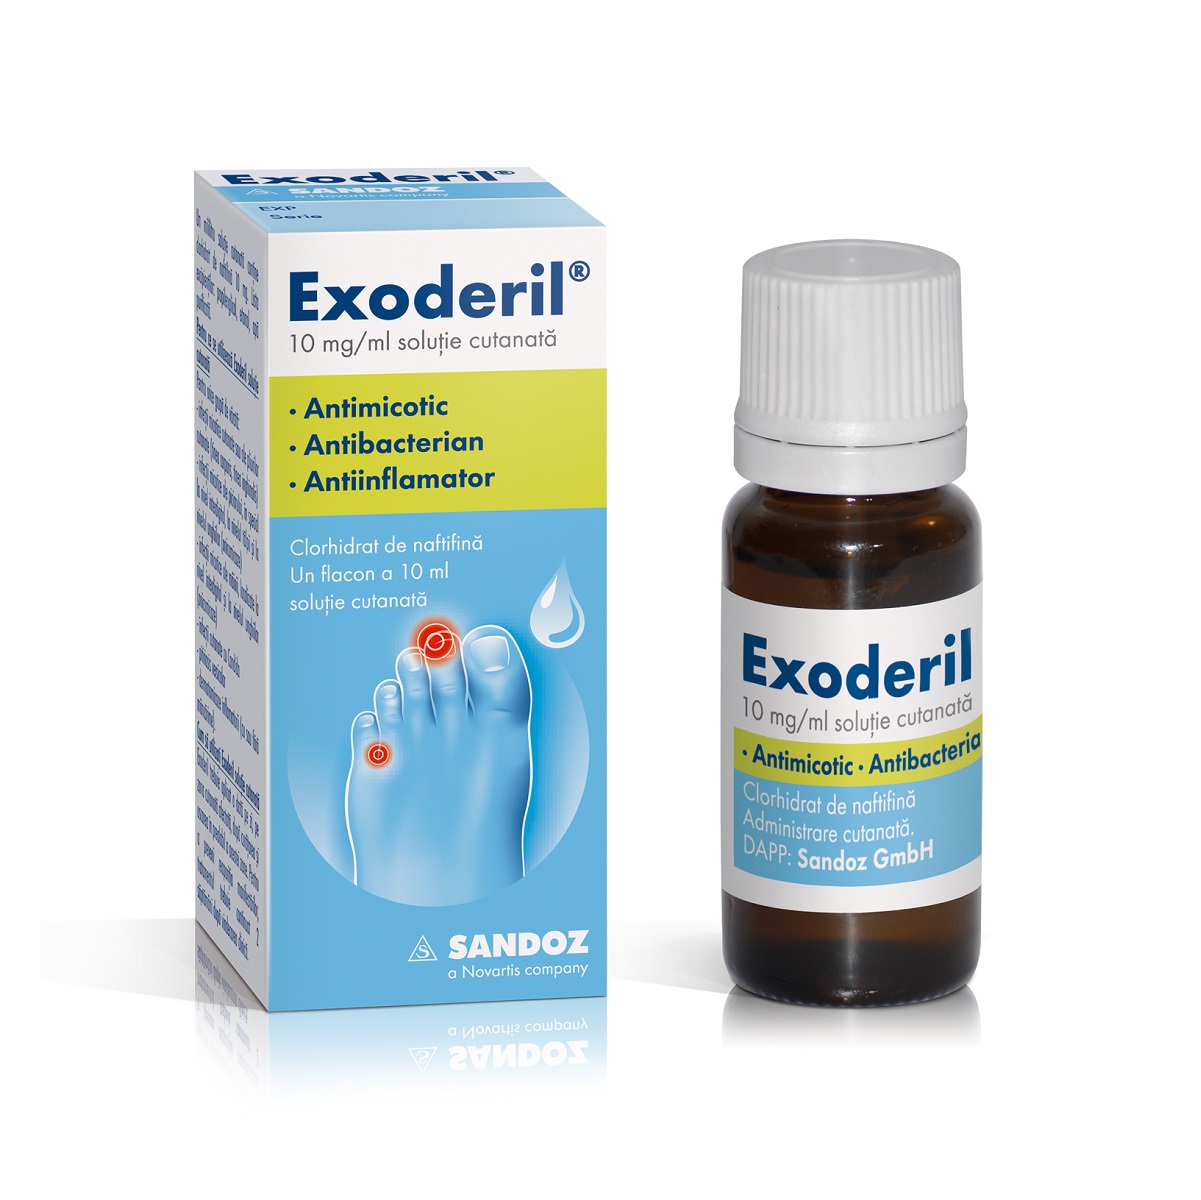 Medicamente fără prescripție medicală - EXODERIL 10 mg/ml x 1, axafarm.ro